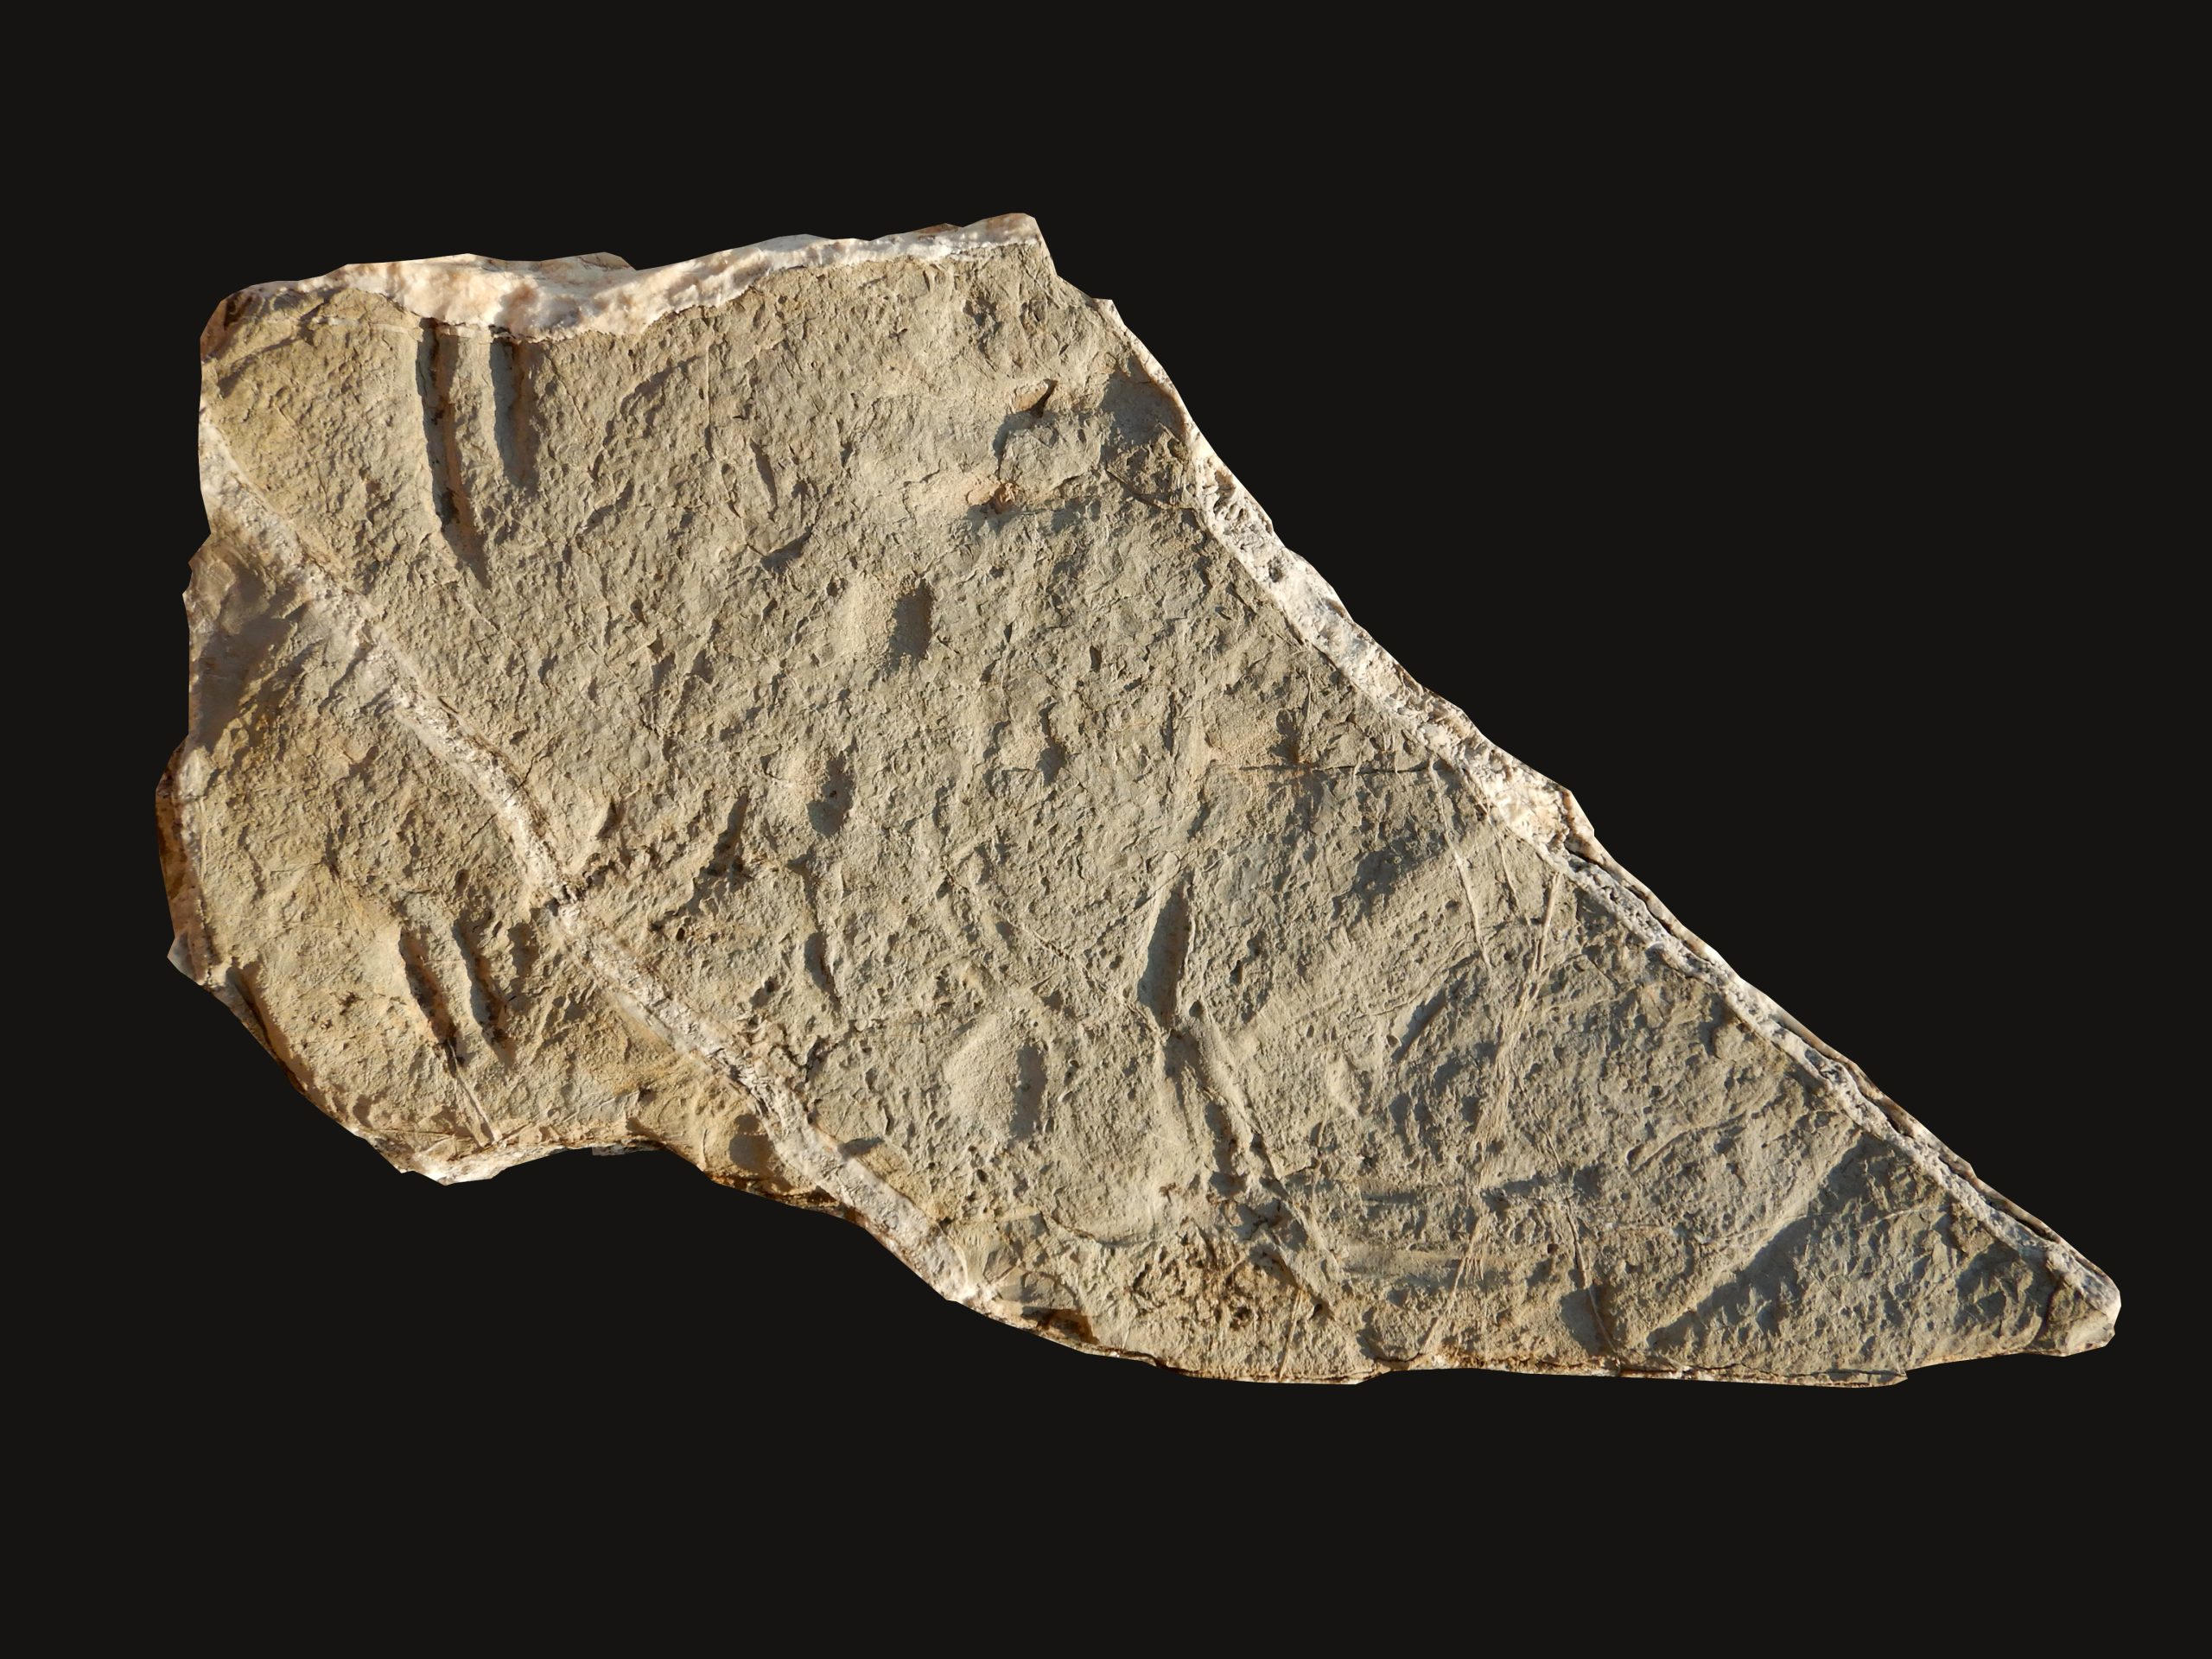 «Я не мог поверить в то, что видел» – обнаружение недостающей части загадки эволюции в камнях возрастом 130 миллионов лет